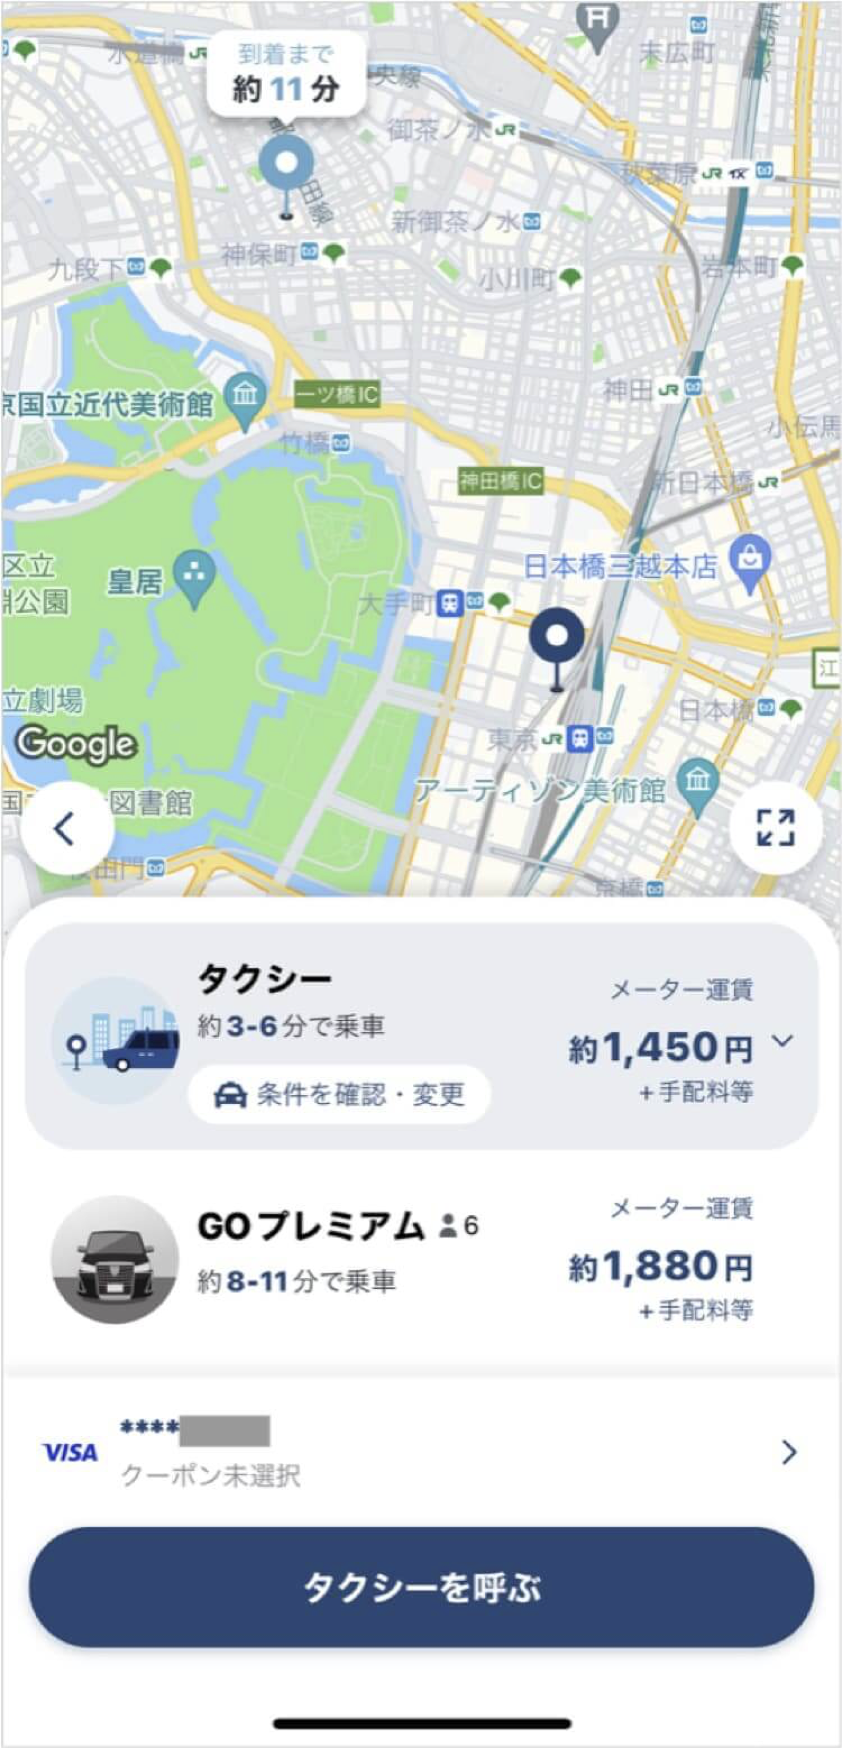 東京駅から神保町までのタクシー料金・所要時間まとめ